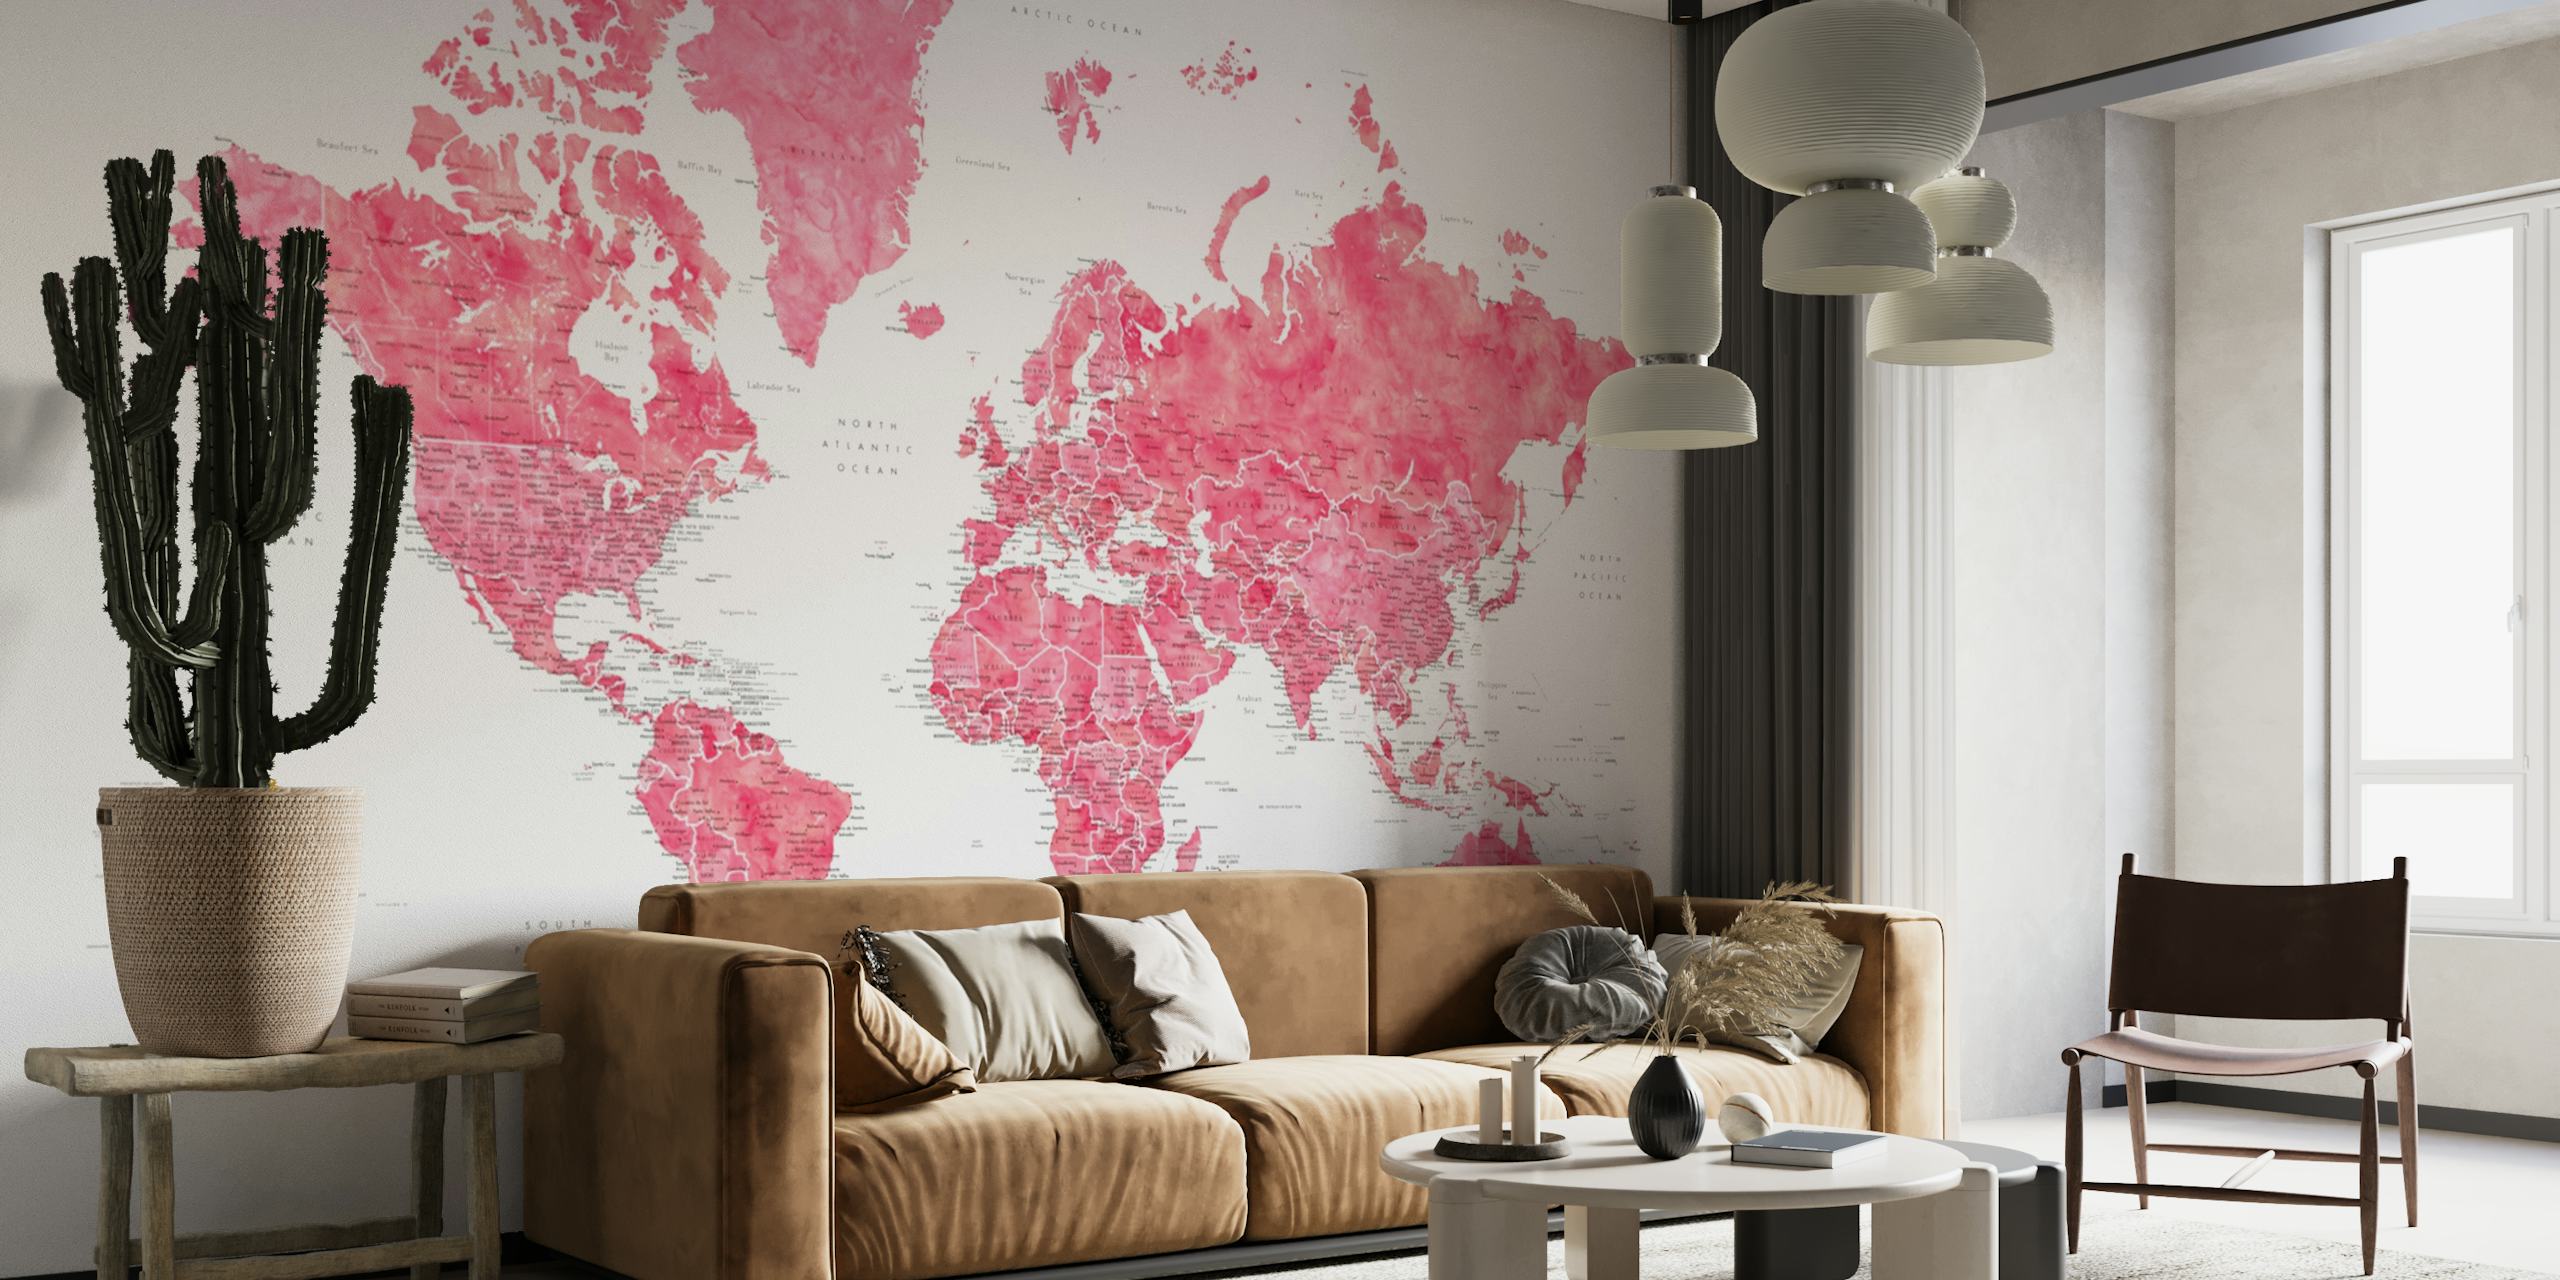 Wanda zidna slika s detaljnom kartom svijeta sa zamršenim geografskim detaljima